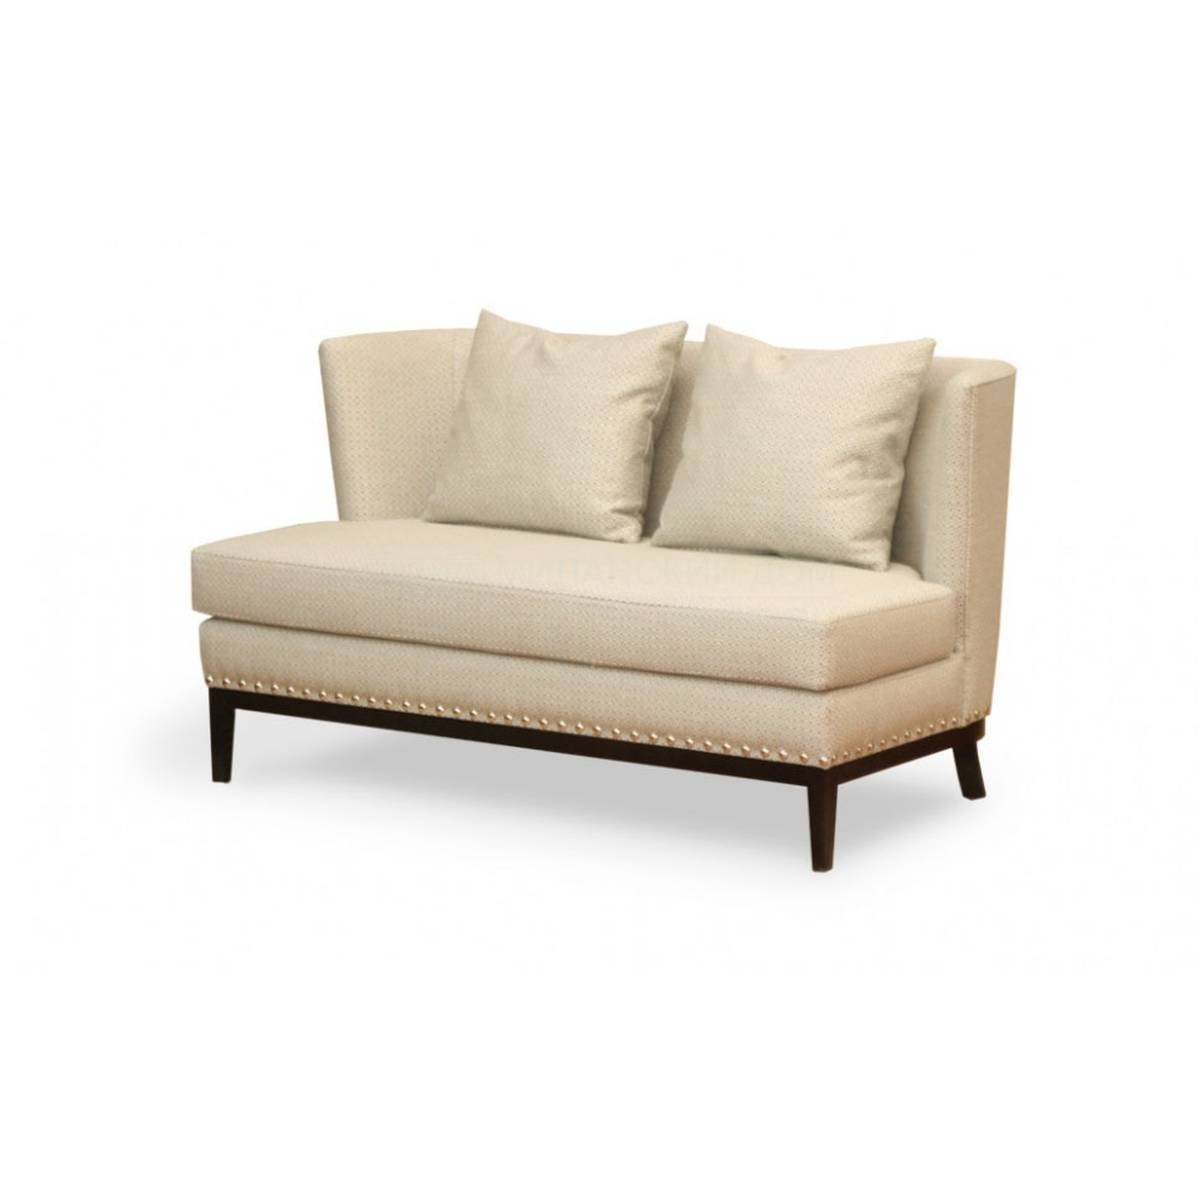 Прямой диван Nor/sofa из Испании фабрики MANUEL LARRAGA